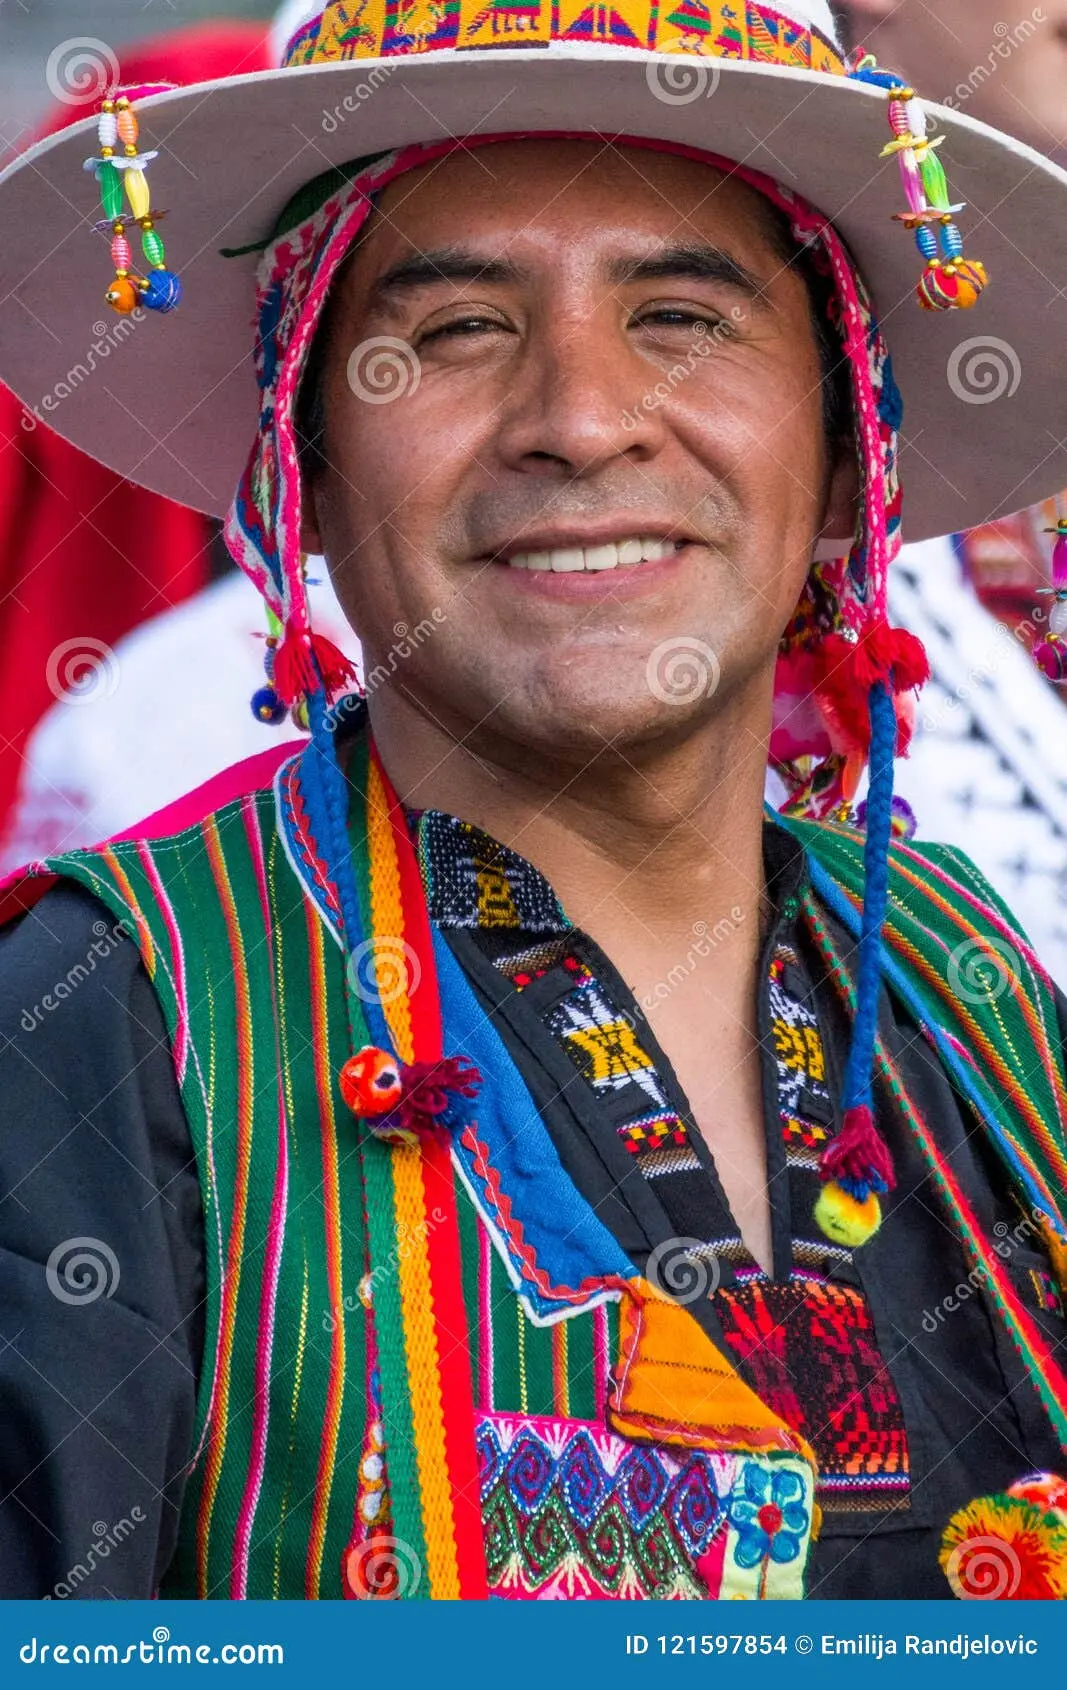 ropa tipica de bolivia de hombre - Qué representa los trajes tipicos de Bolivia